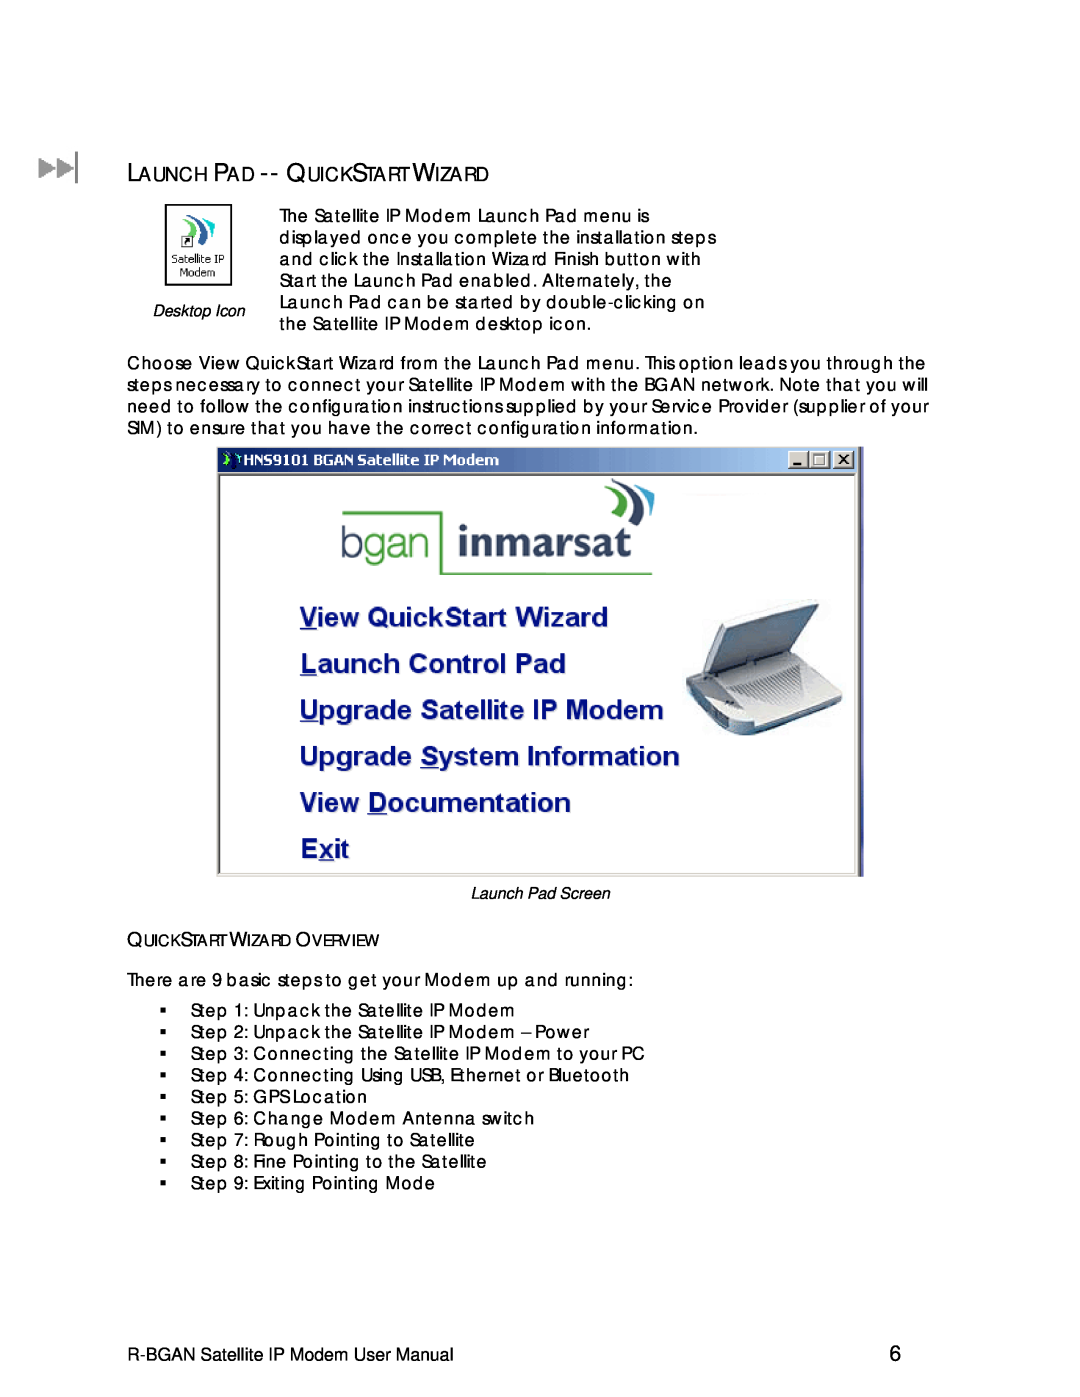 Hughes R-BGAN manual Launch Pad -- Quickstart Wizard, Quickstart Wizard Overview 